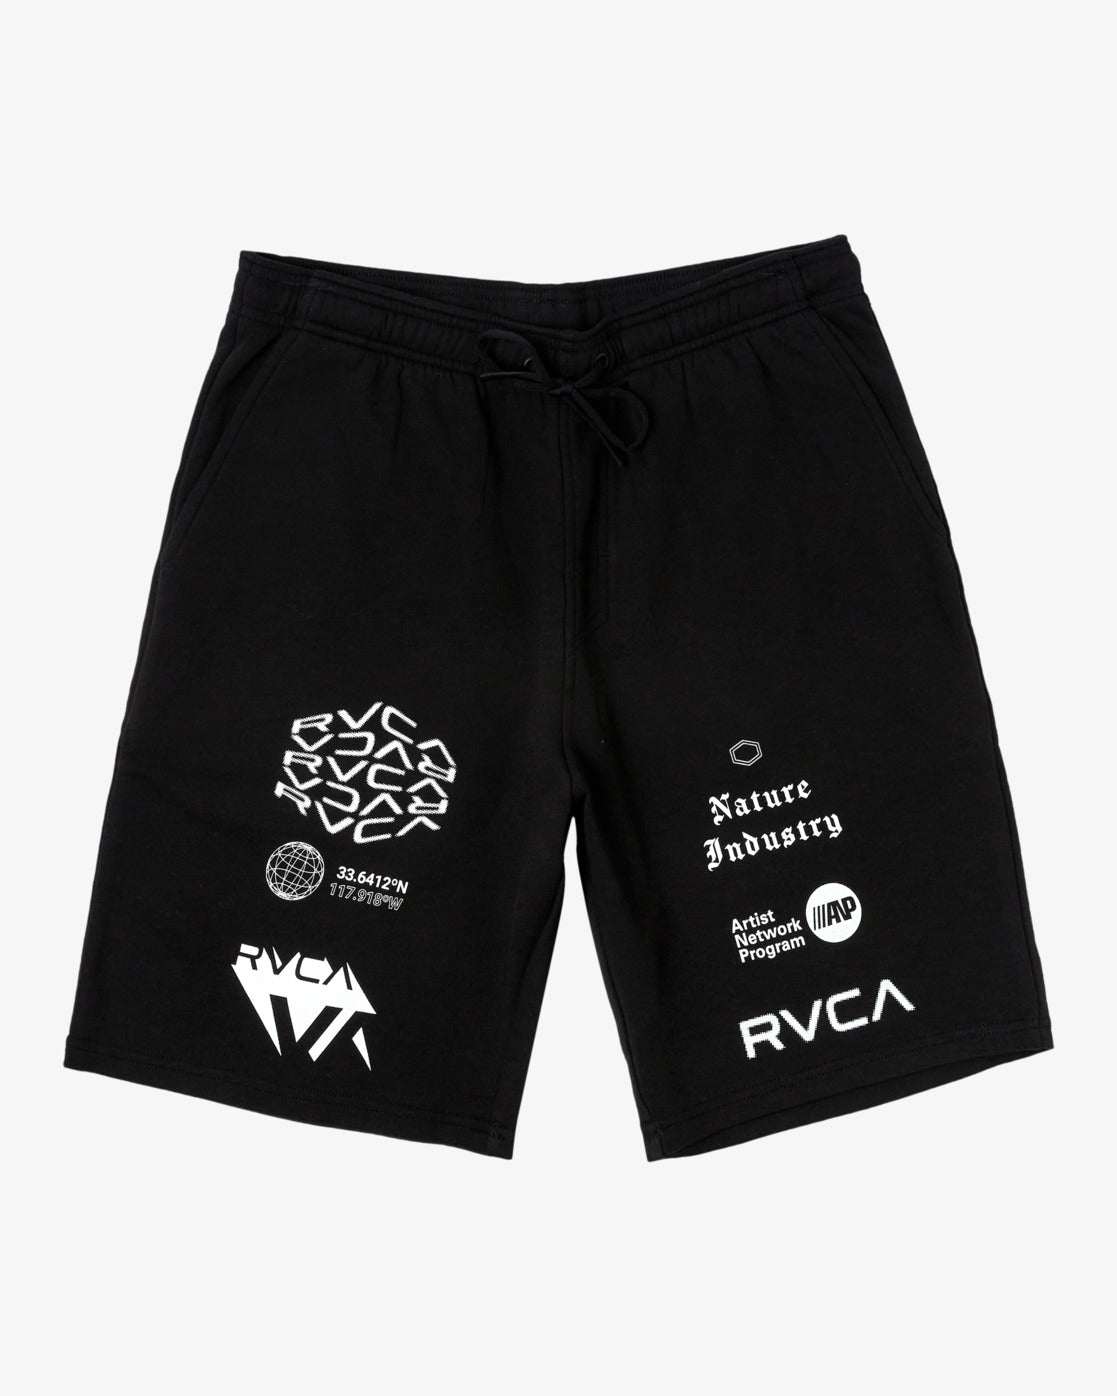 VA Sport 19 Sports Sweat Shorts - Black/White